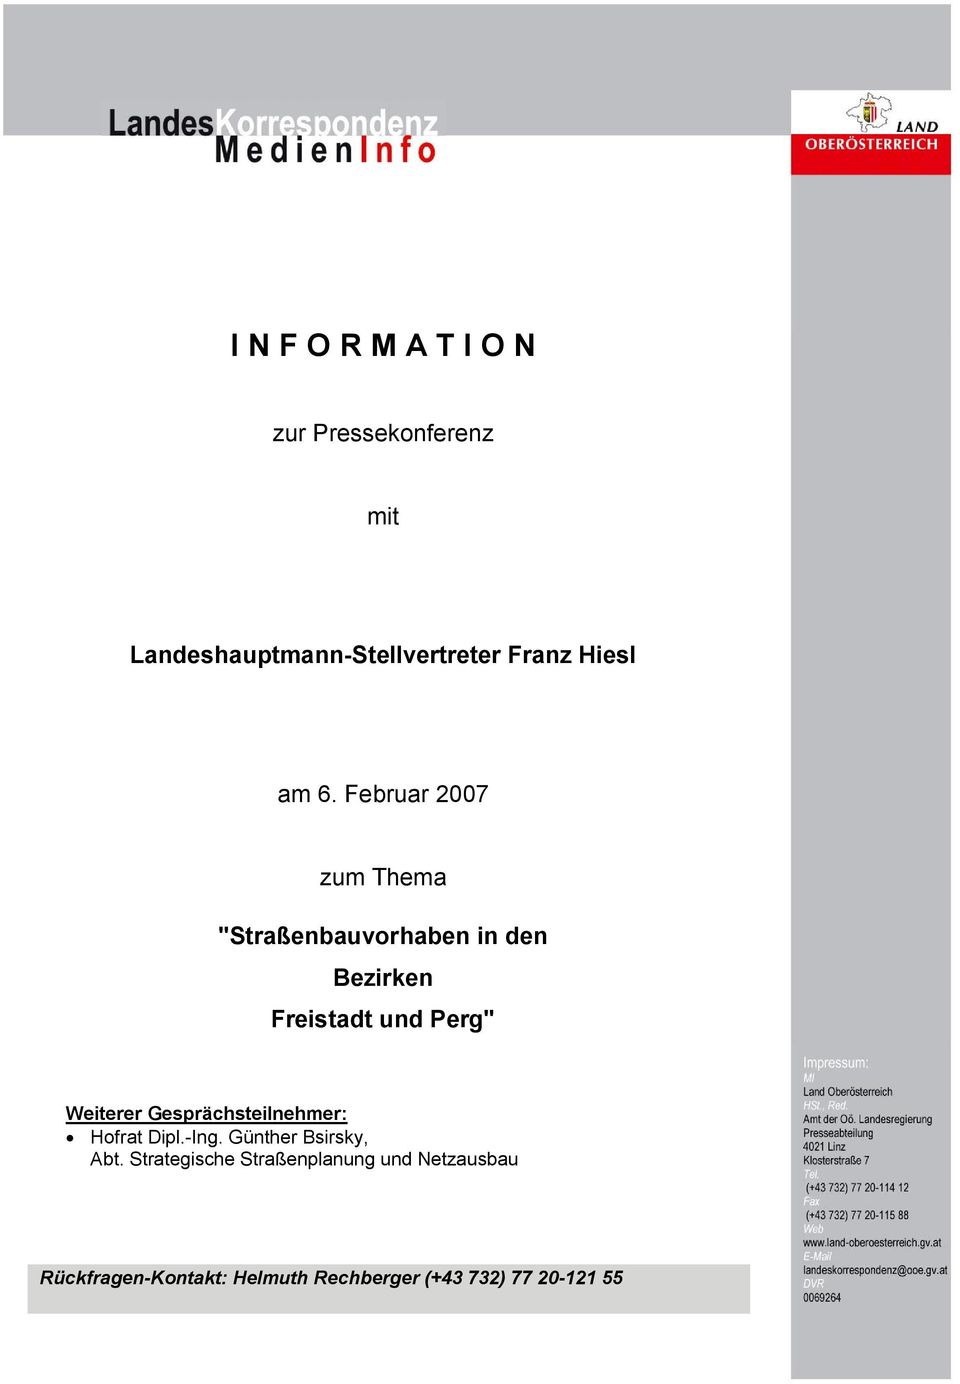 Februar 2007 zum Thema "Straßenbauvorhaben in den Bezirken Freistadt und Perg"